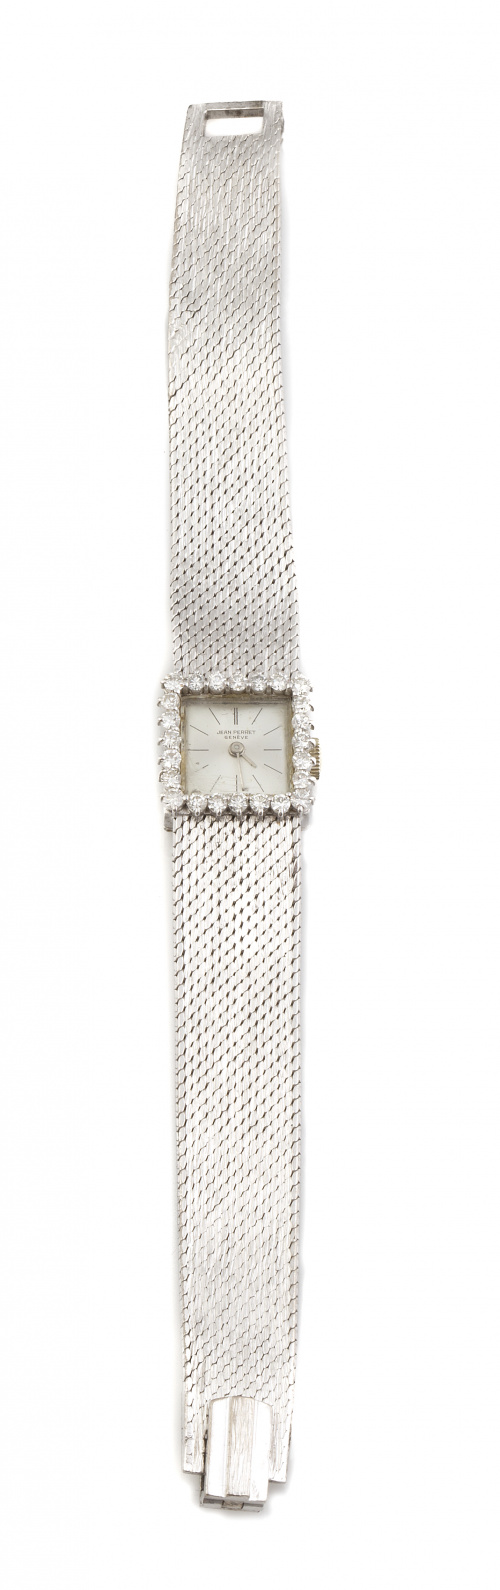 Reloj JEAN PERRET años 60 en oro blanco de 18K con caja orl